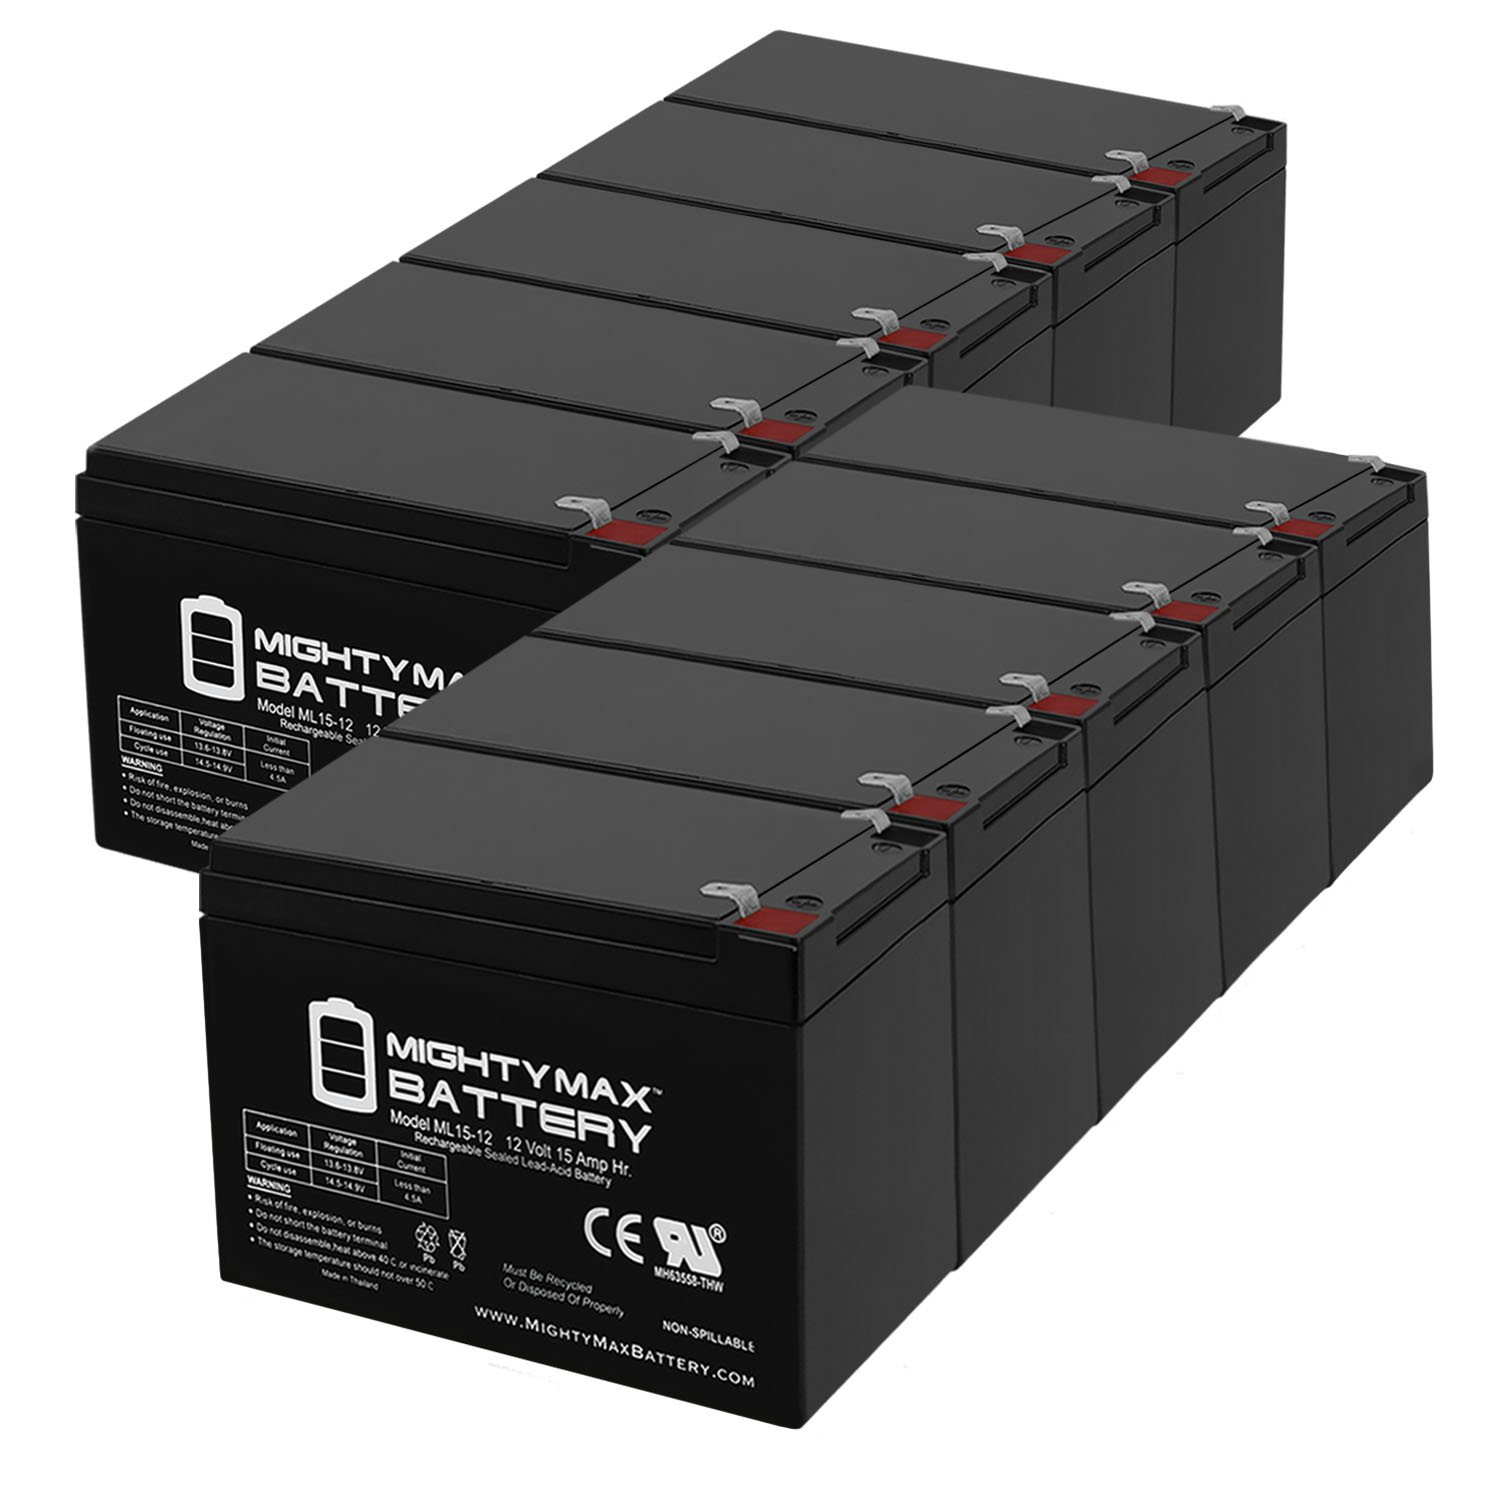 ML15-12 12V 15AH F2 UPS Battery for Mongoose CR36V450 - 10 Pack